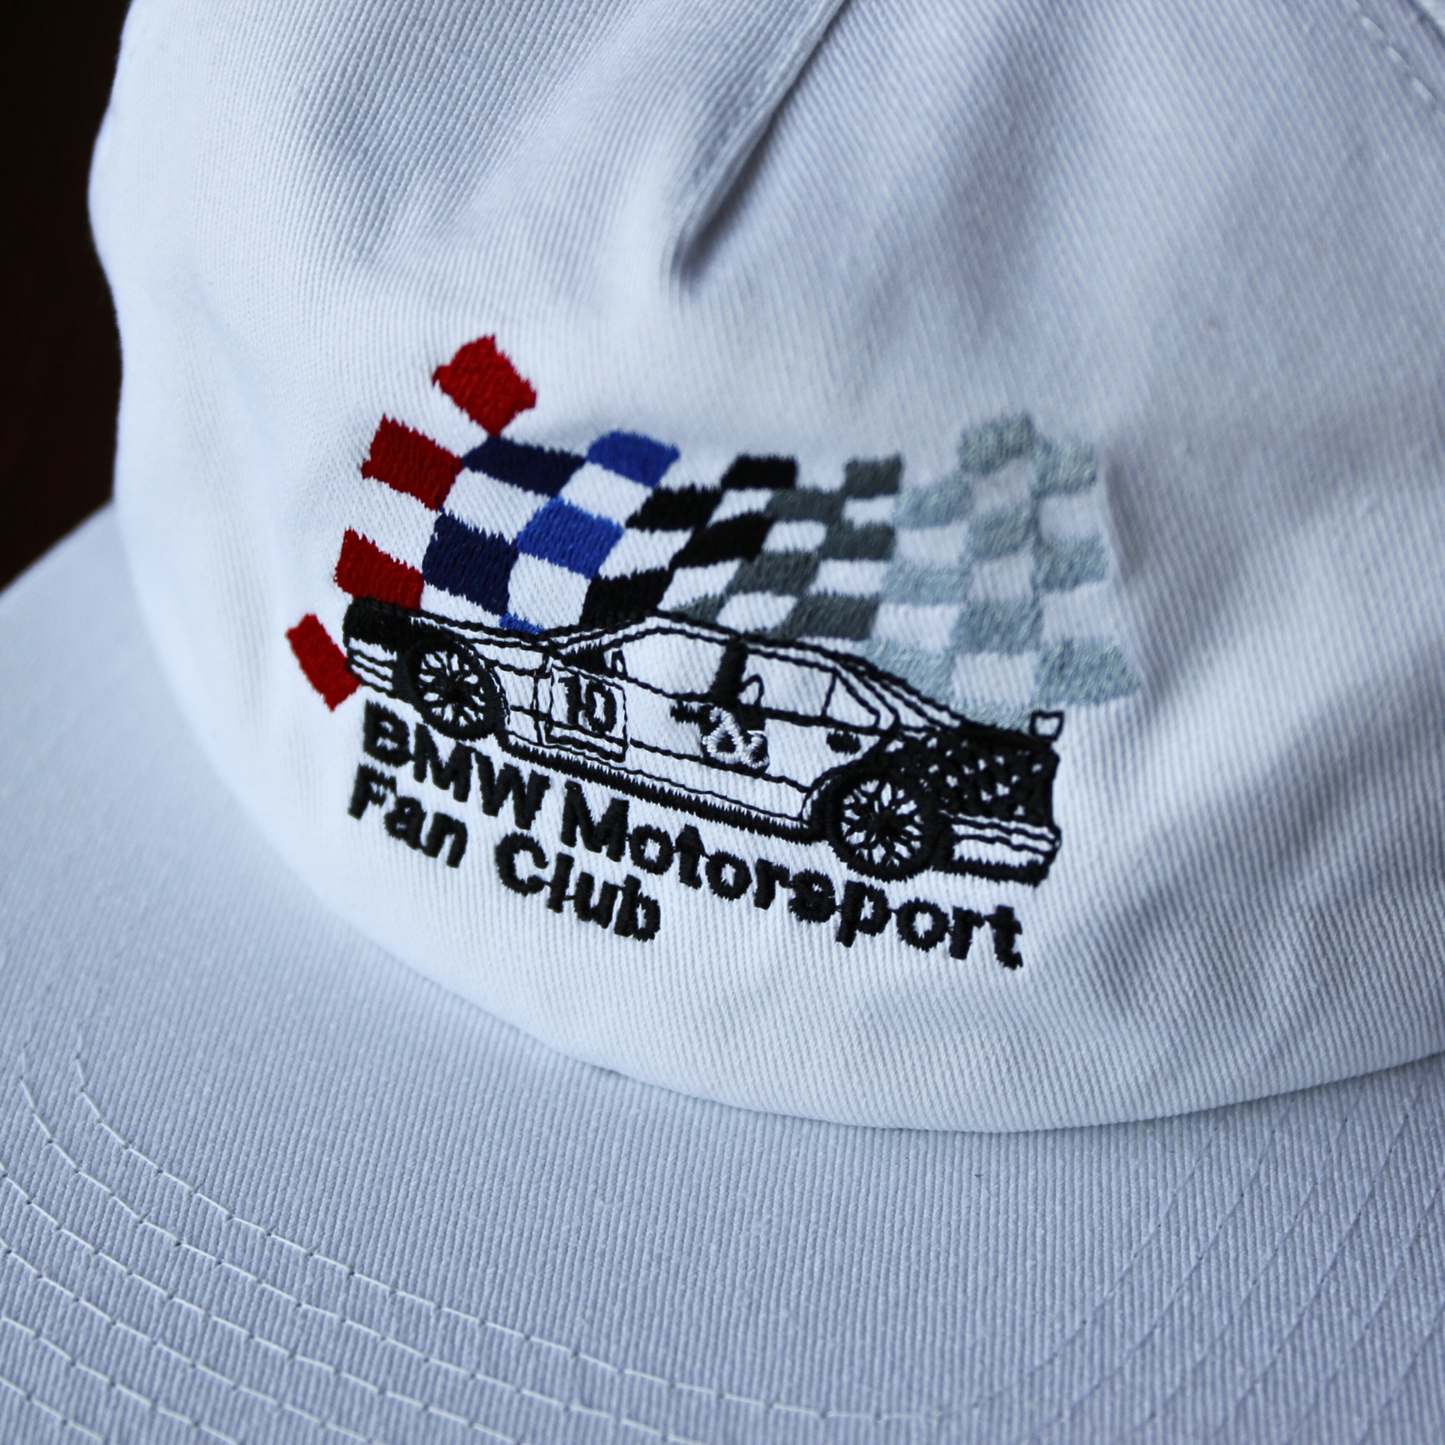 Motorsport Fan Club 5 panel cap